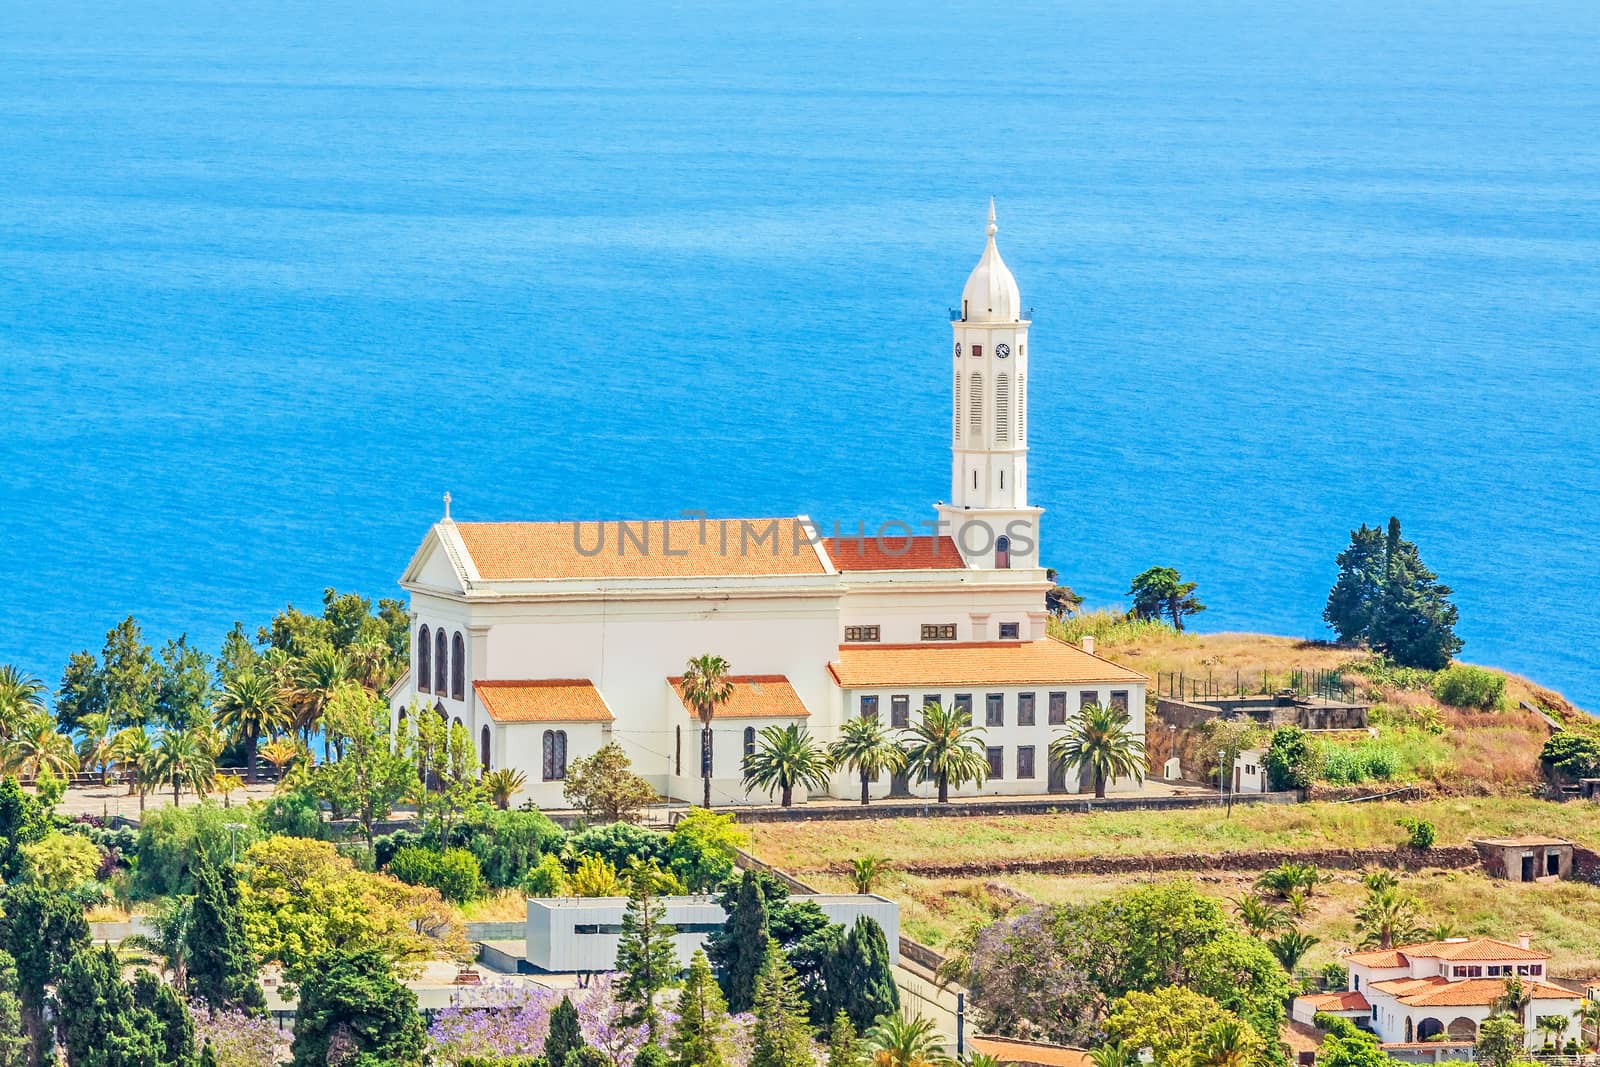 Church of Sao Martinho, Funchal, Madeira by aldorado